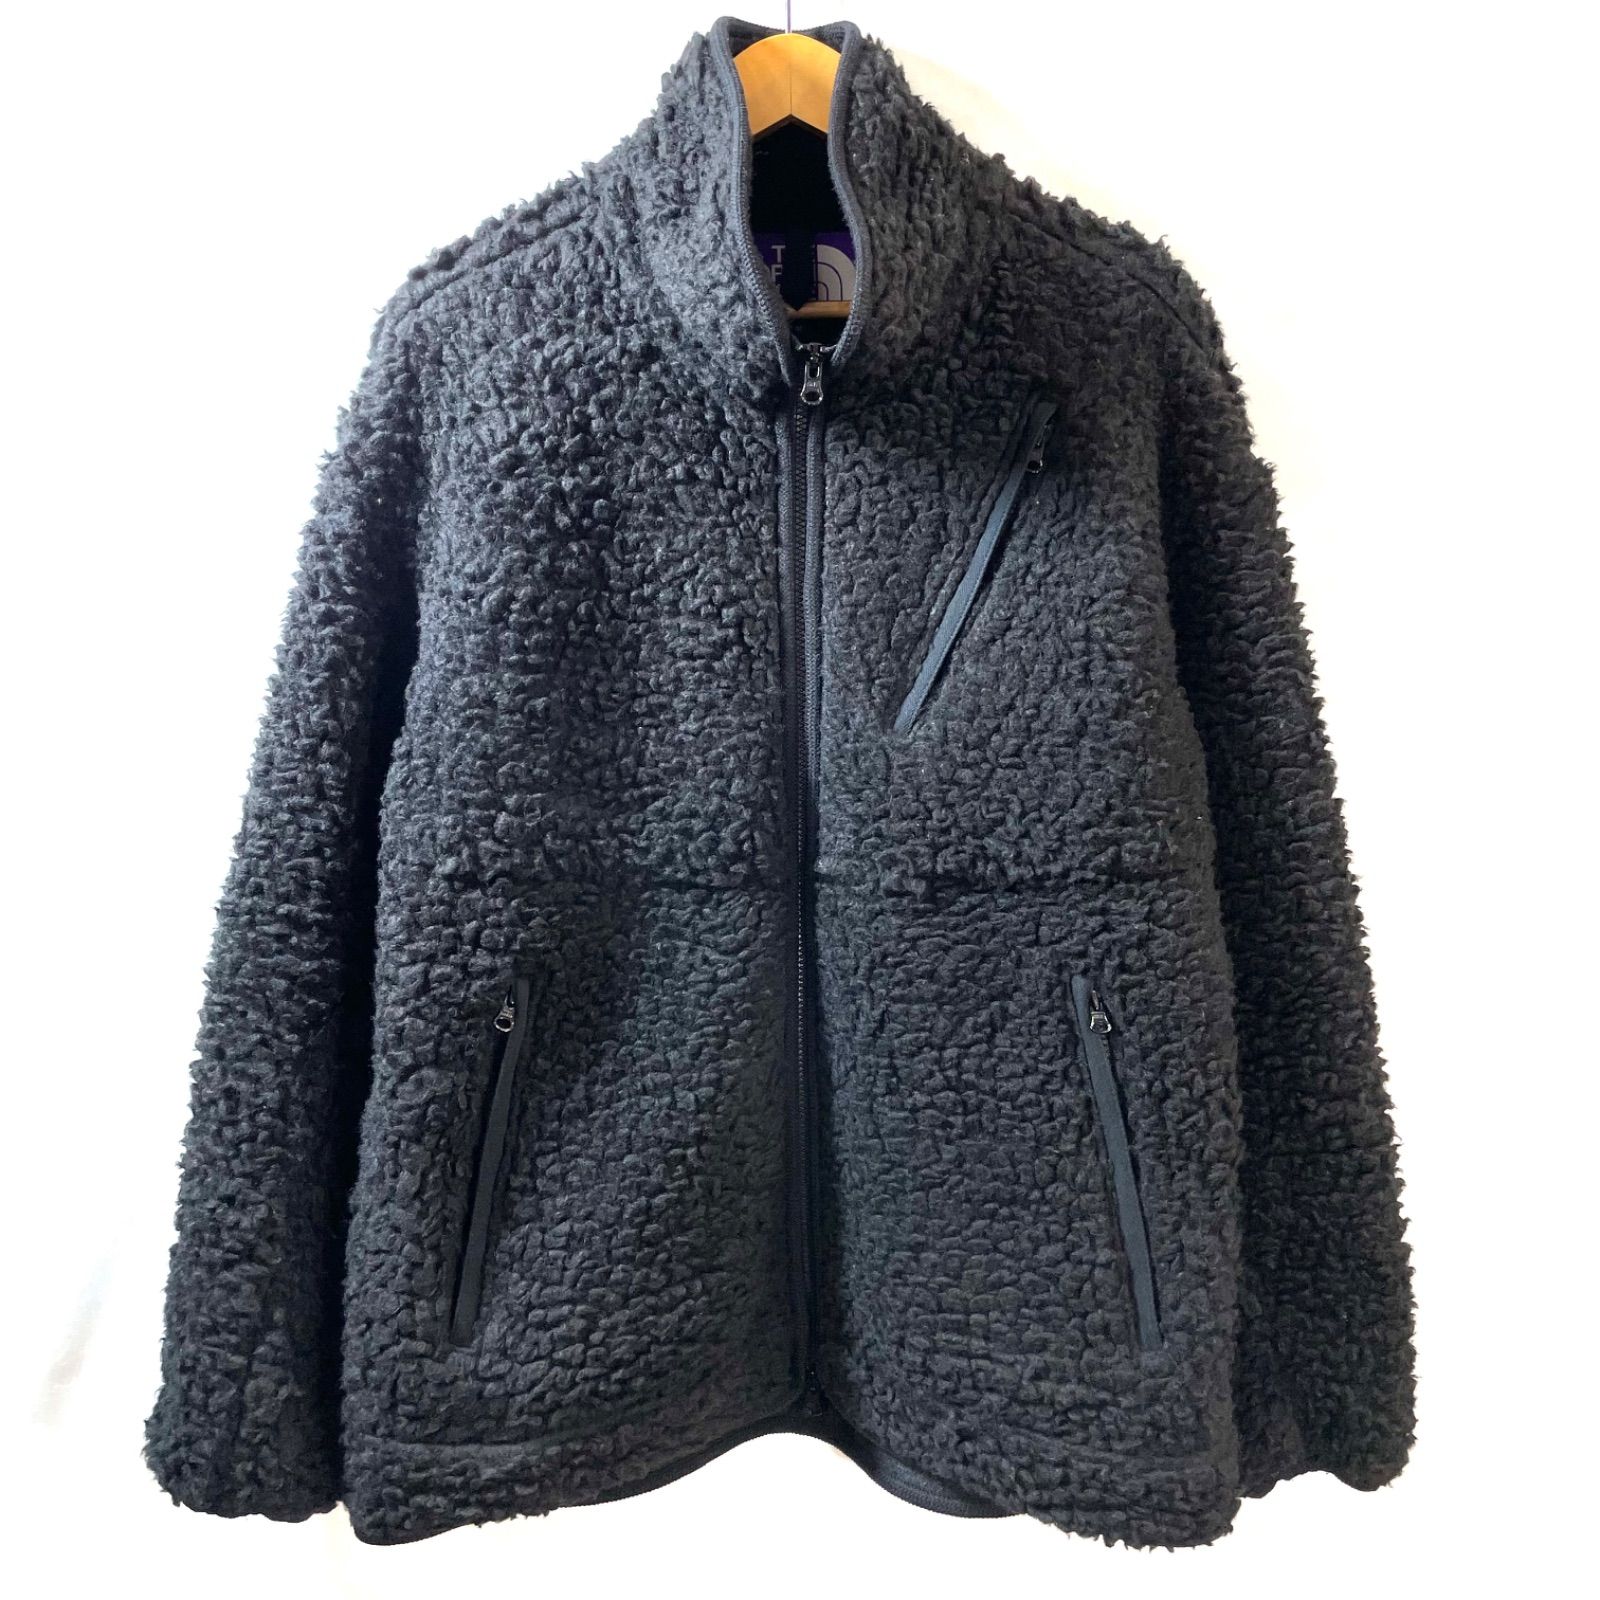 69】THE NORTH FACE PURPLE LABEL Wool Boa Fleece Field Jacket 20AW